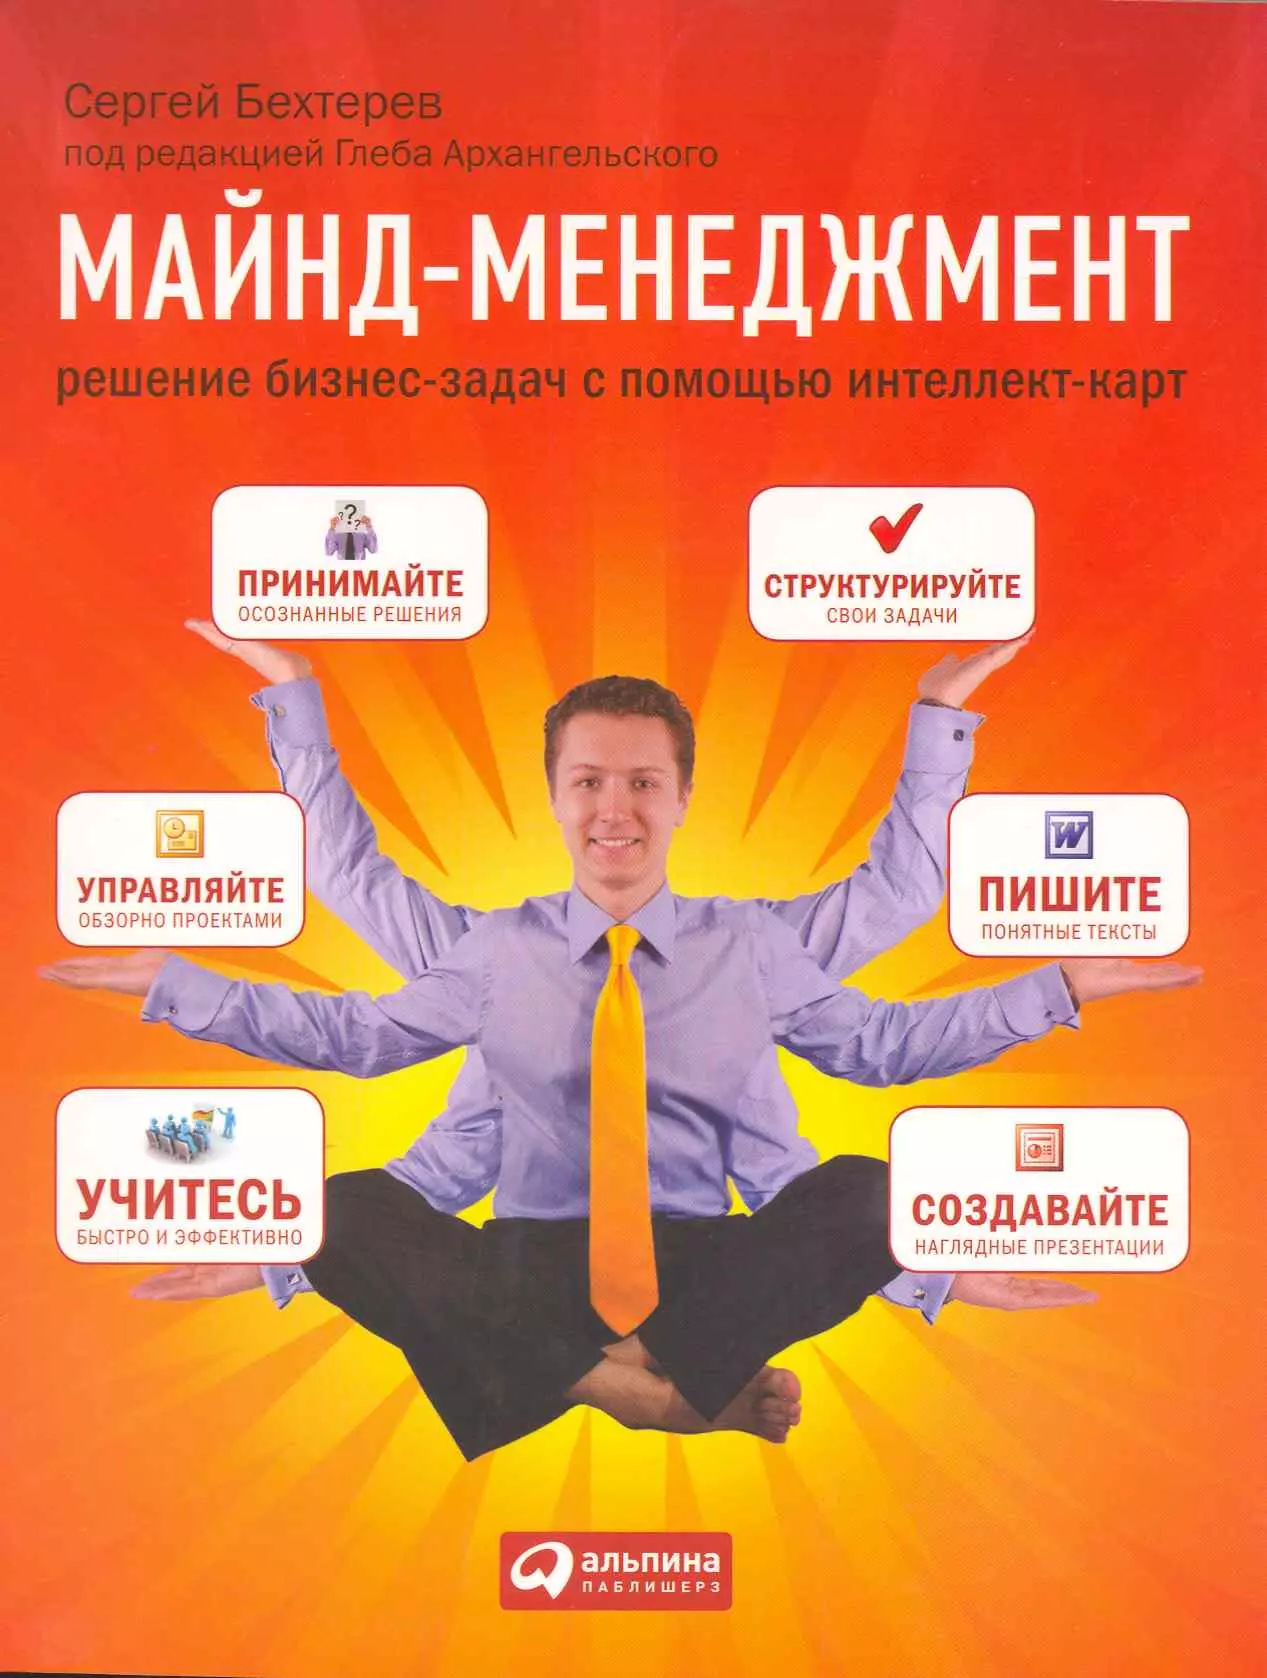 Бехтерев Сергей - Майнд-менеджмент: решение бизнес-задач с помощью интеллект-карт